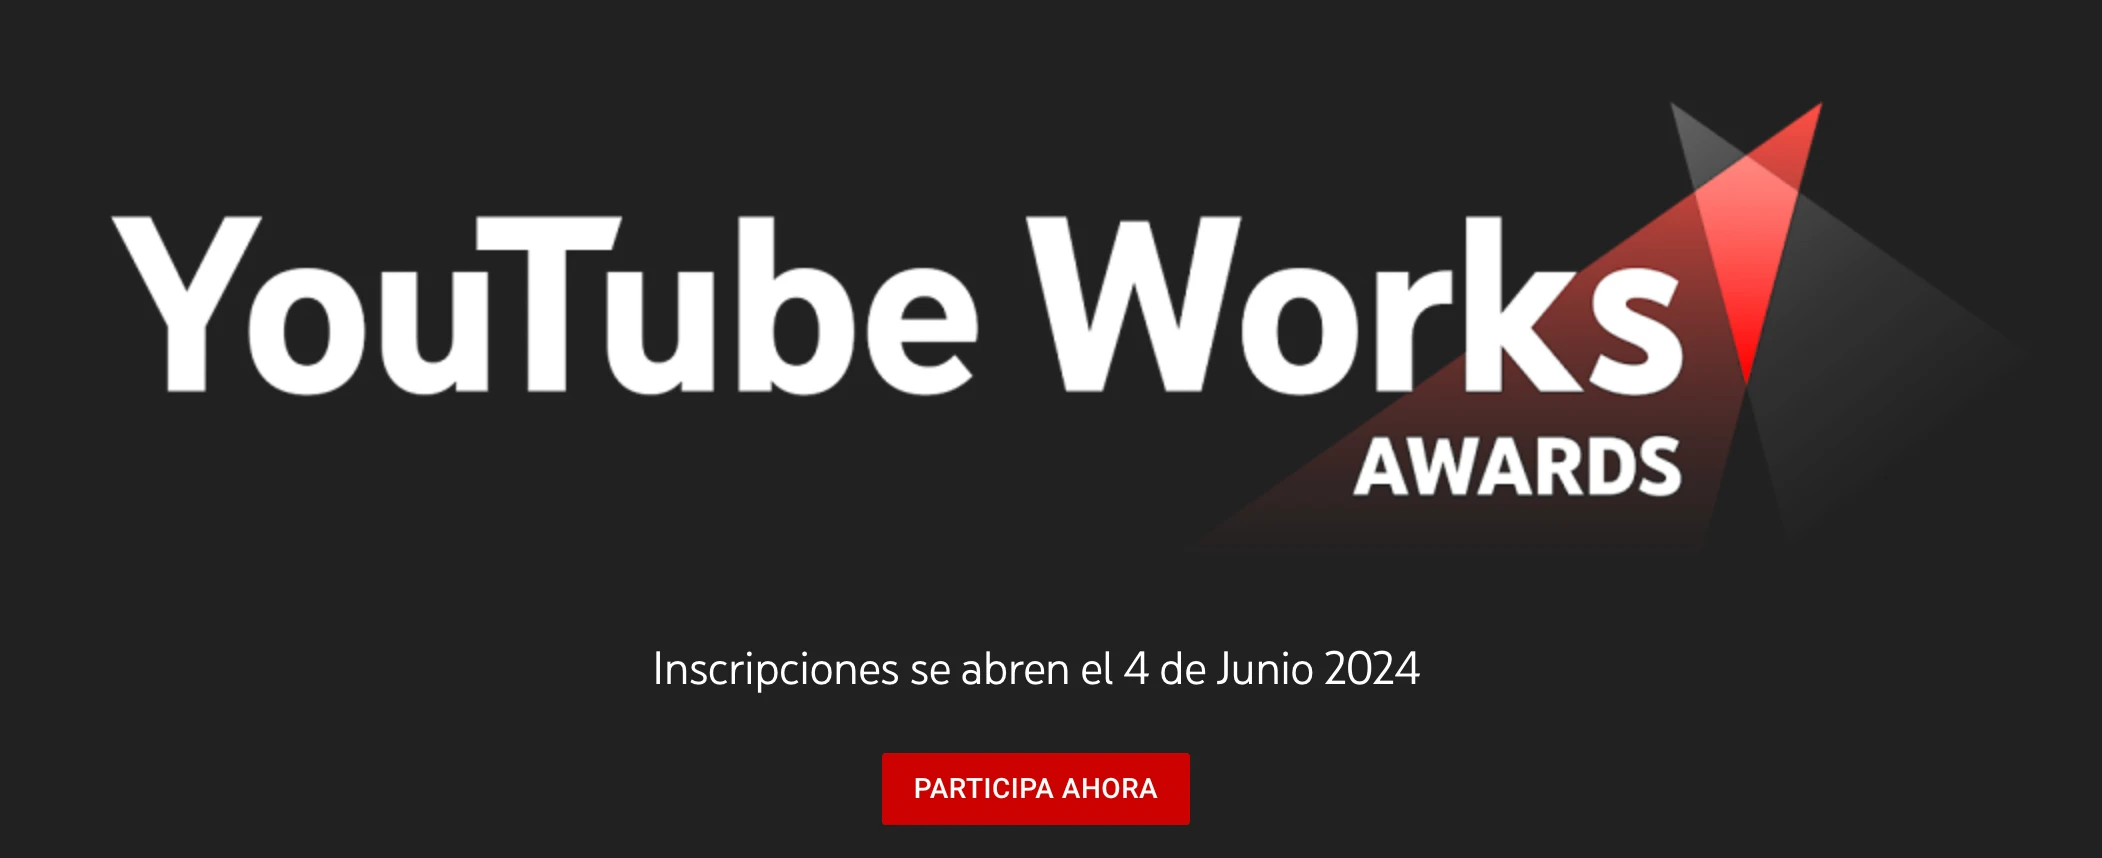 Captura de pantalla de los Youtube Works Awards.